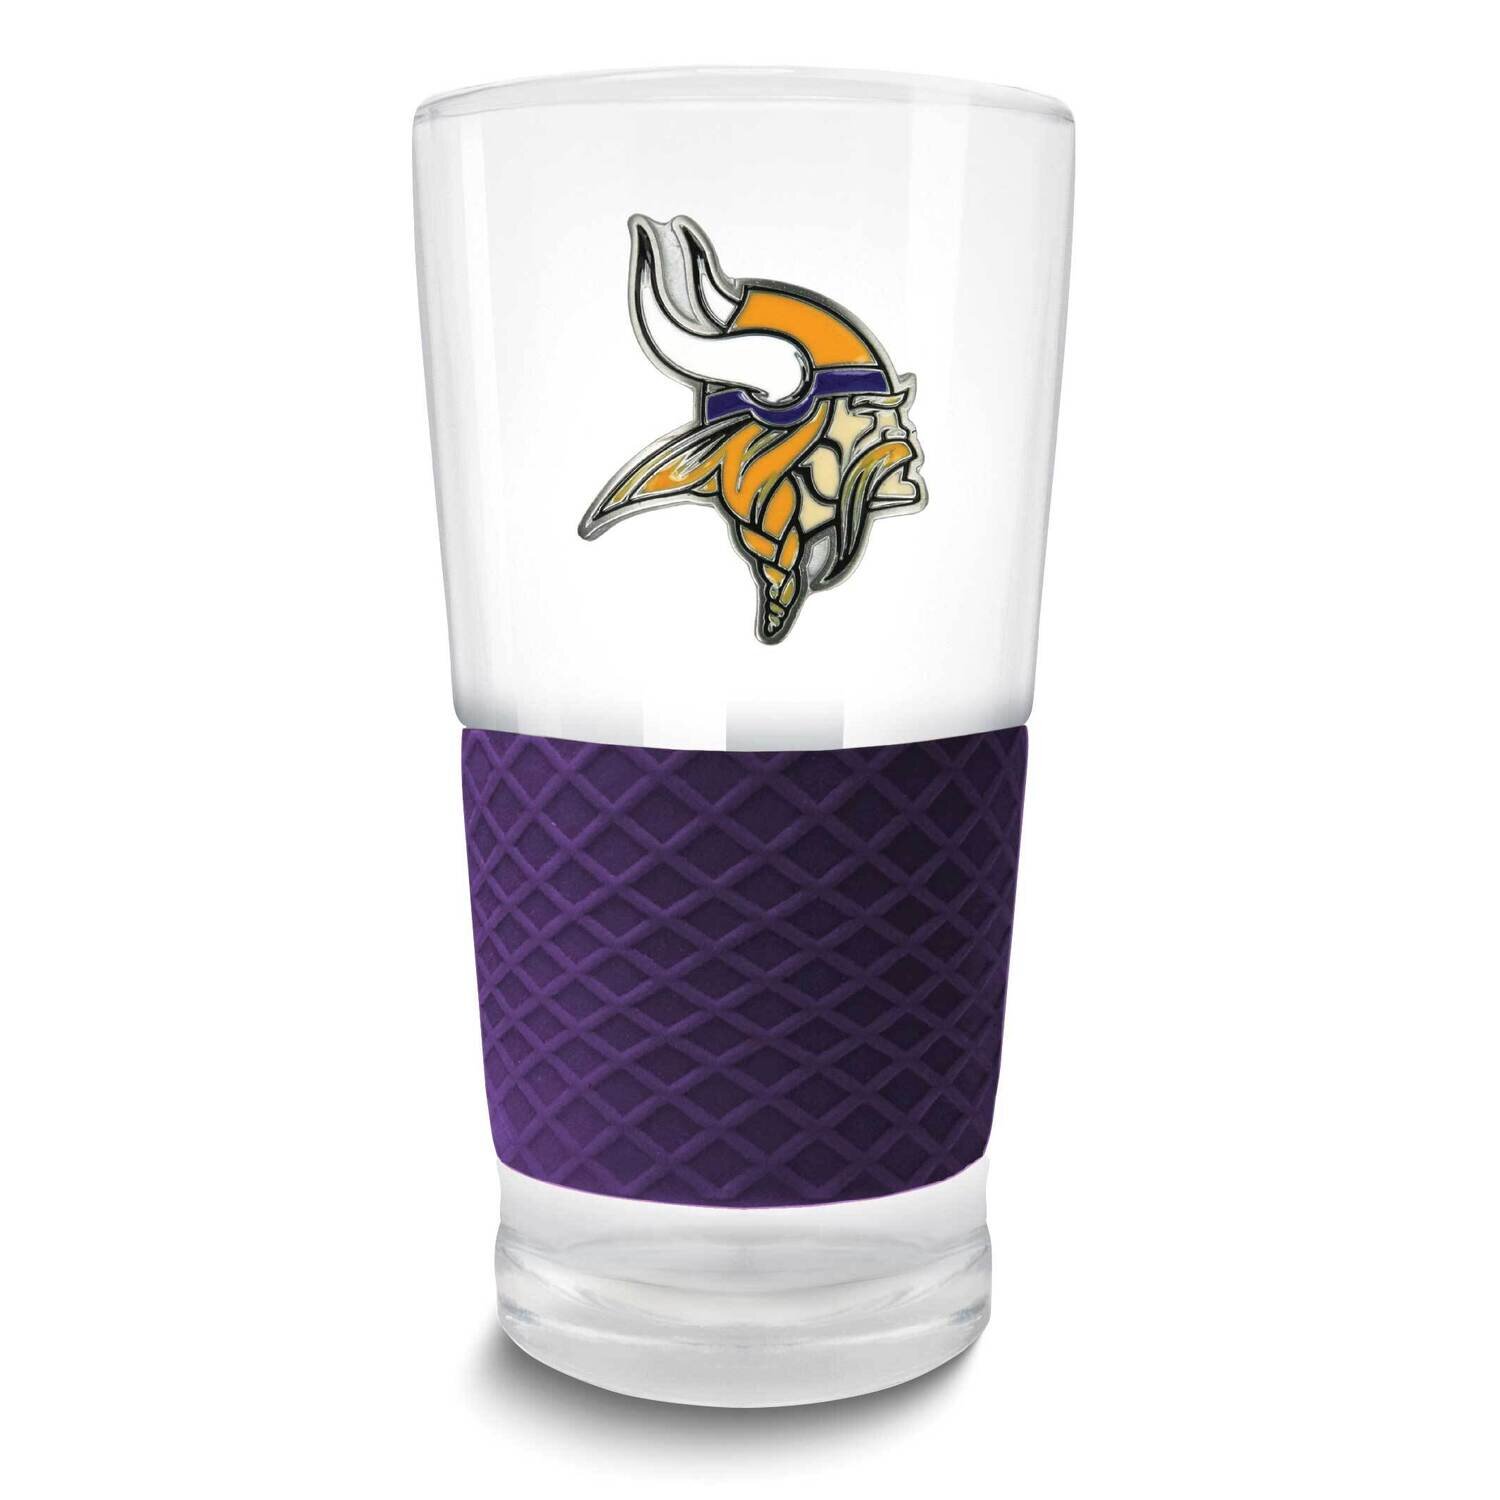 NFL Minnesota Vikings Score Pint Glass GM26128-VIK